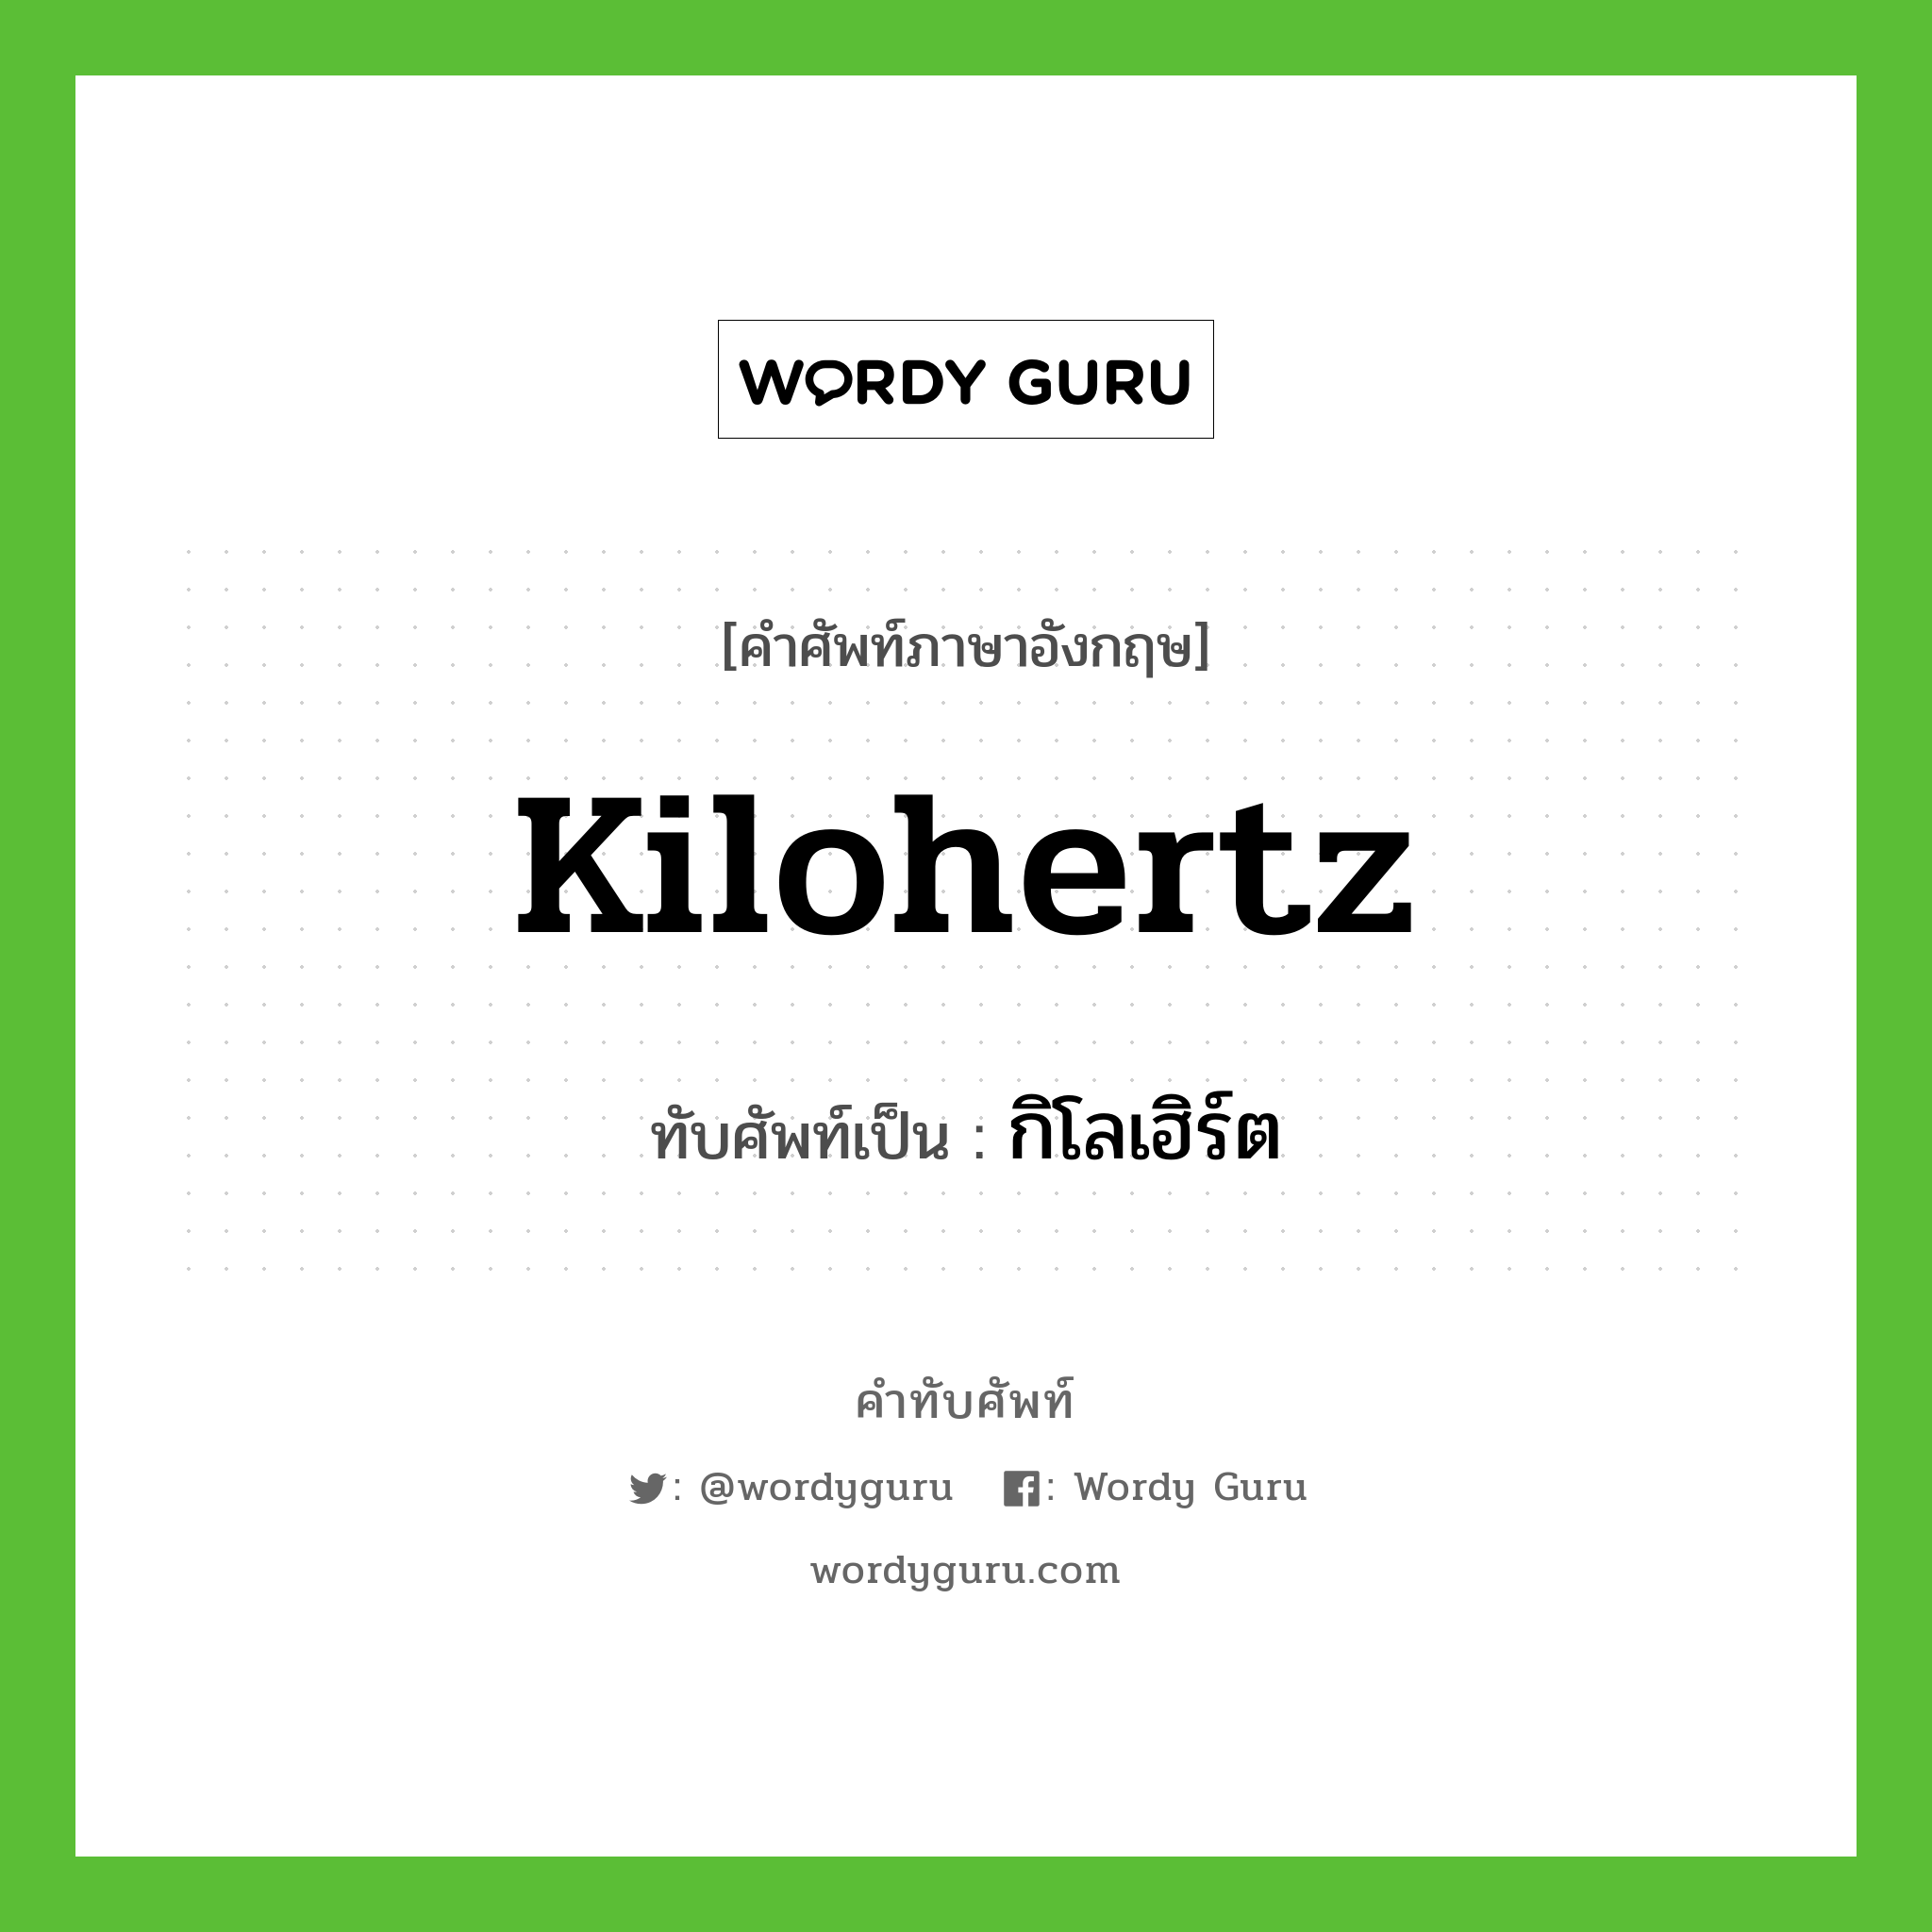 kilohertz เขียนเป็นคำไทยว่าอะไร?, คำศัพท์ภาษาอังกฤษ kilohertz ทับศัพท์เป็น กิโลเฮิร์ต